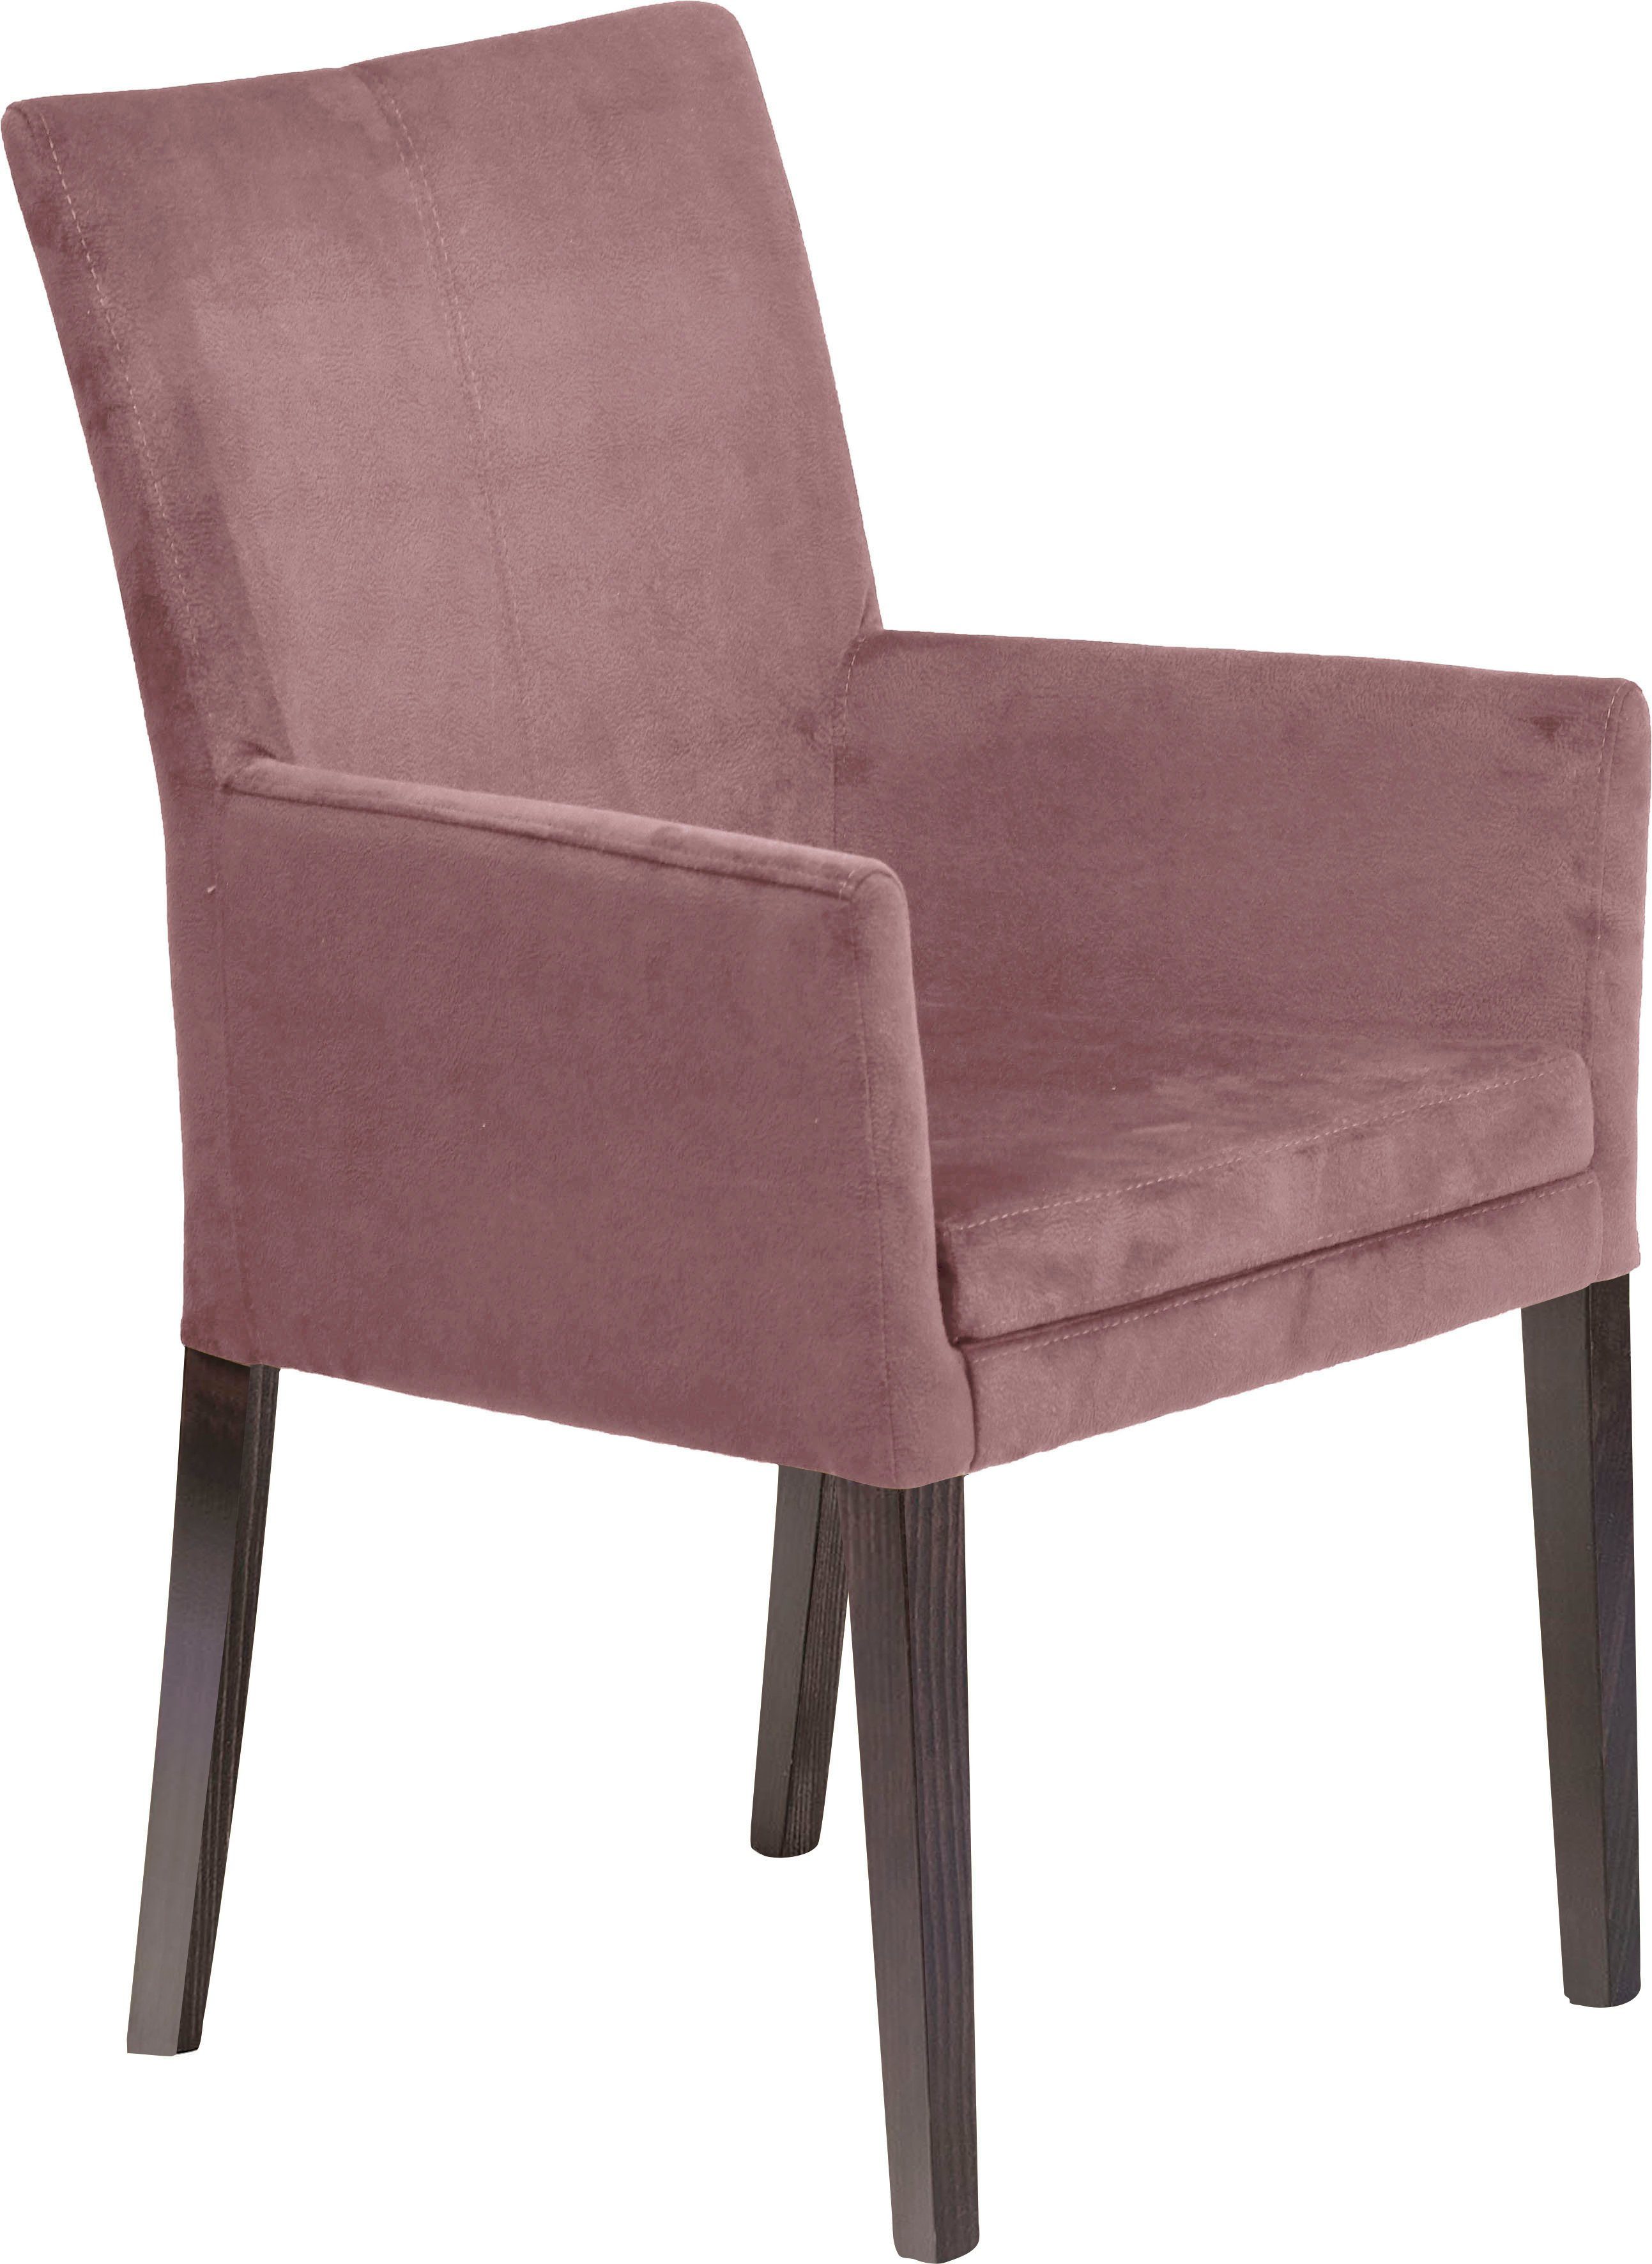 Home affaire Armlehnstuhl Aspen, Beine aus massiver Buche, wengefarben lackiert | Stühle